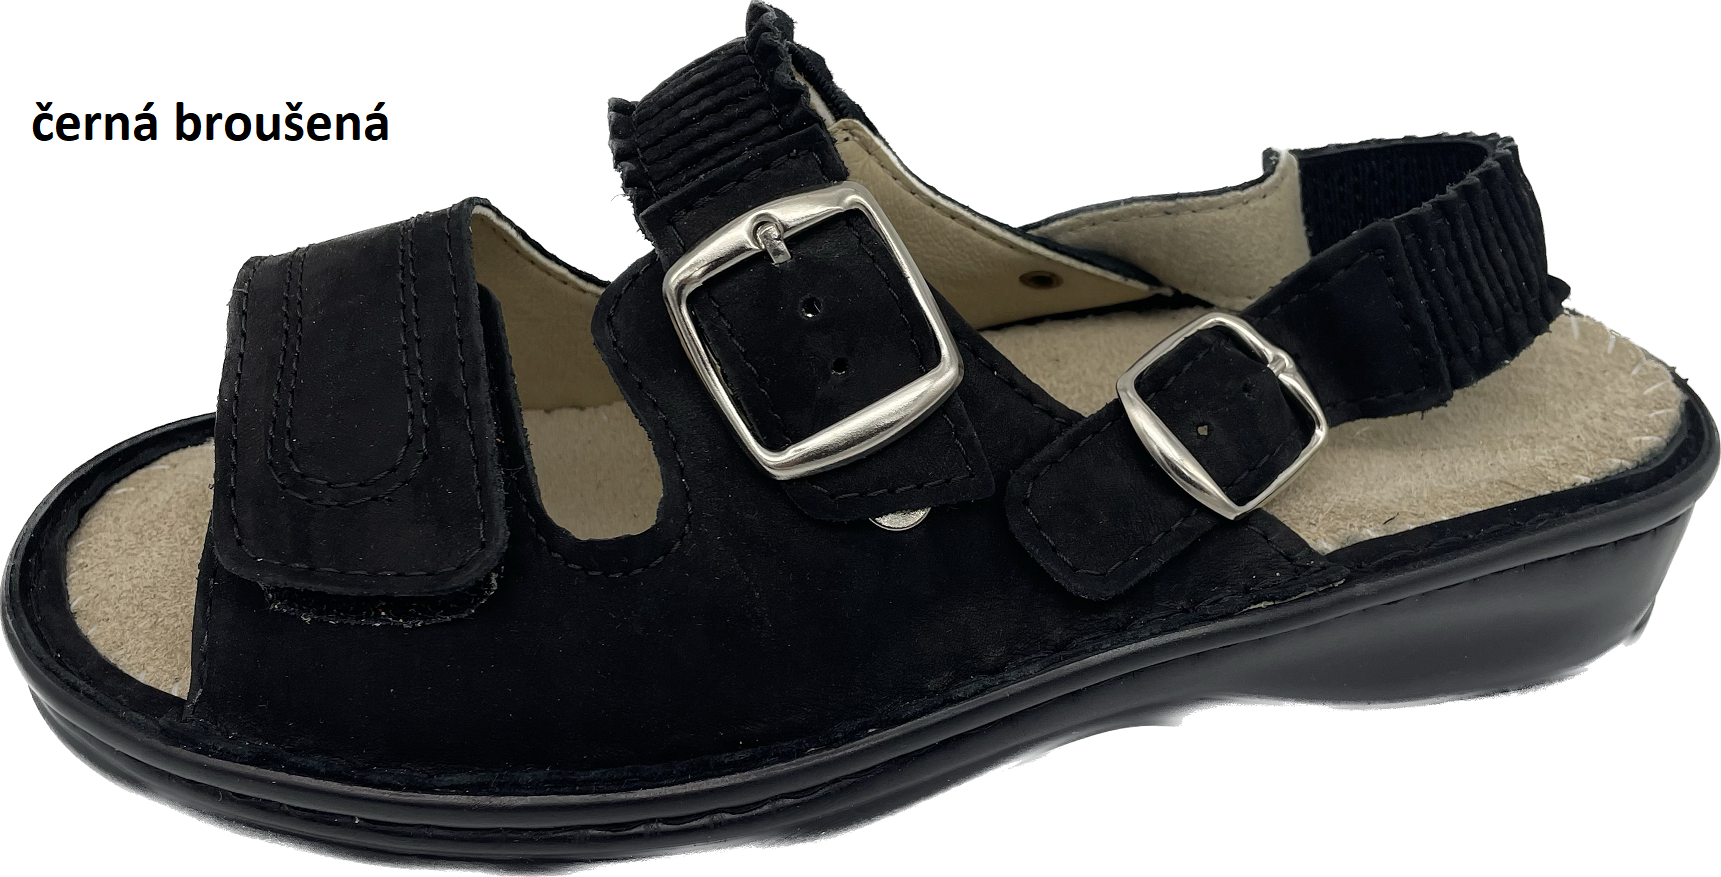 Boty Hanák vzor 305 P - černá podešev Barva usně: černá broušená, Velikosti obuvi: 42